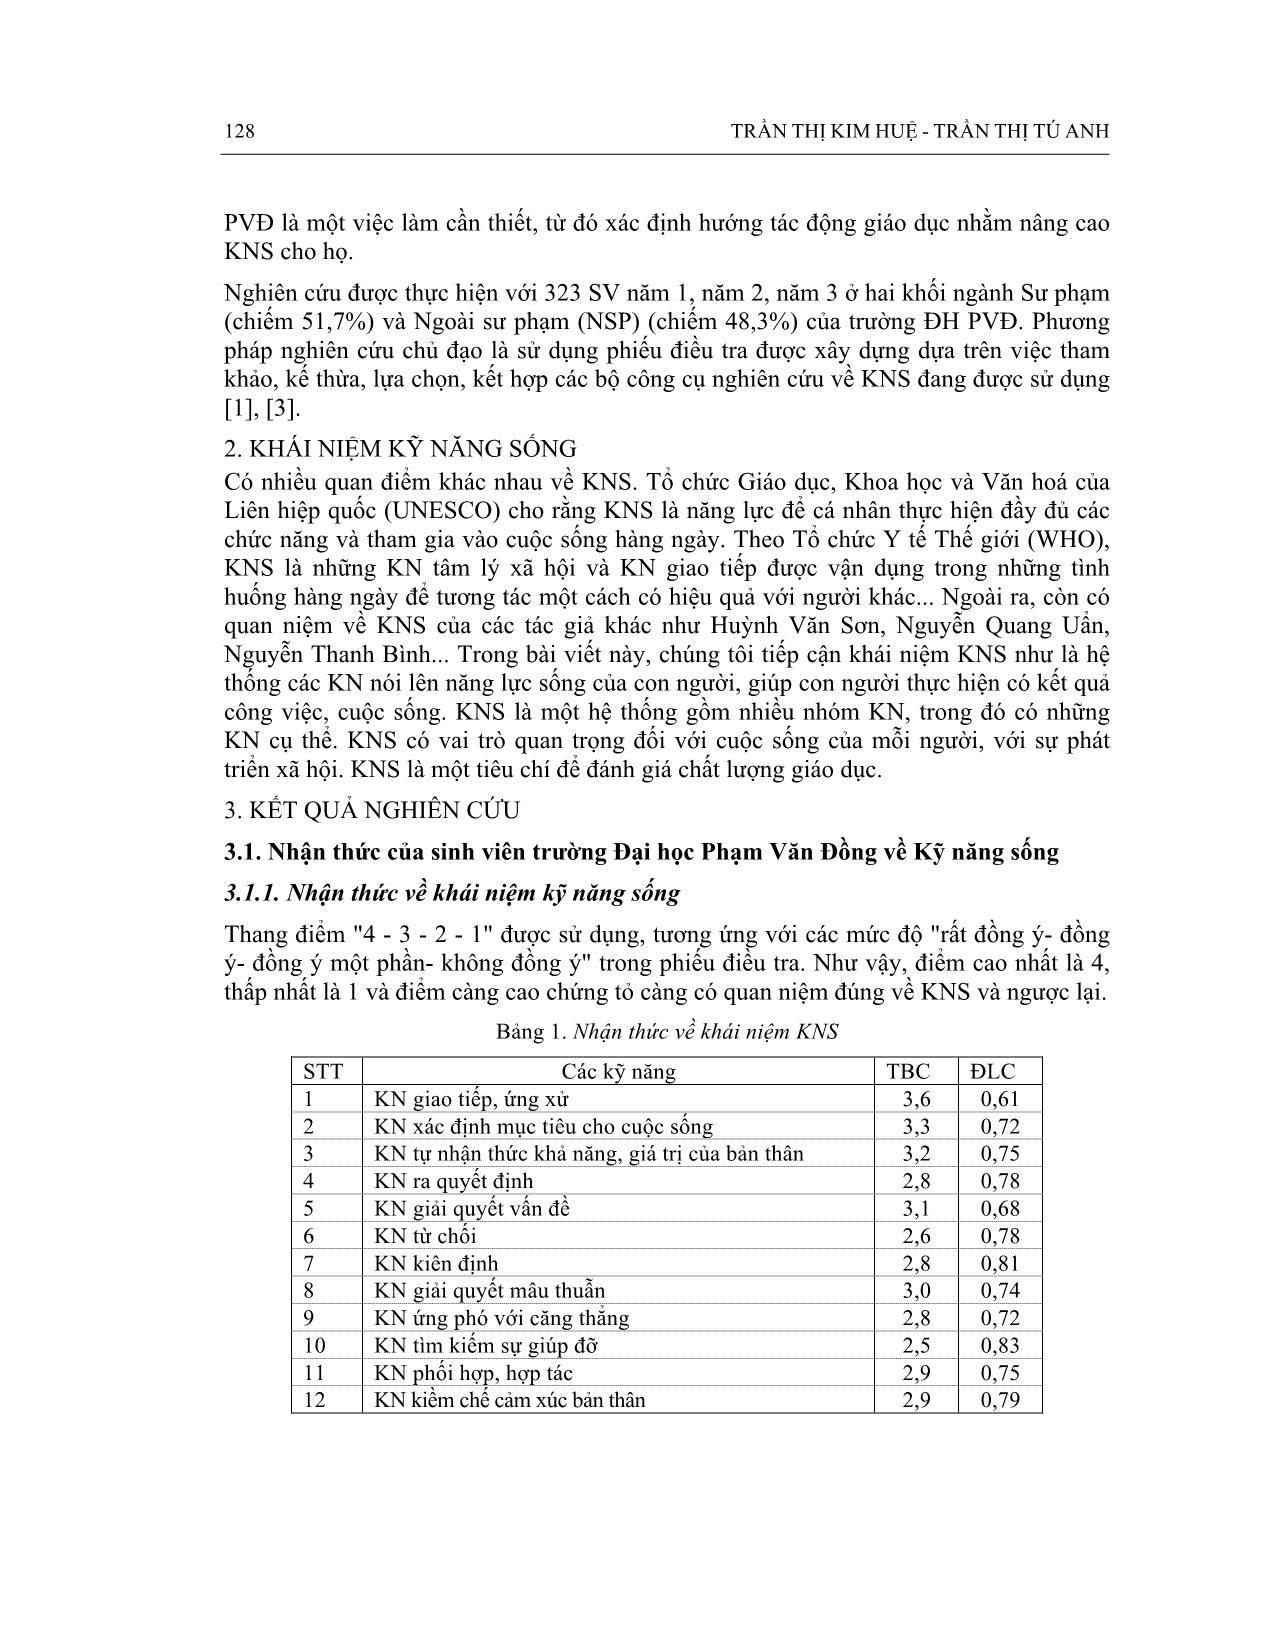 Kỹ năng sống của sinh viên trường đại học Phạm Văn Đồng - Quảng ngãi trang 2